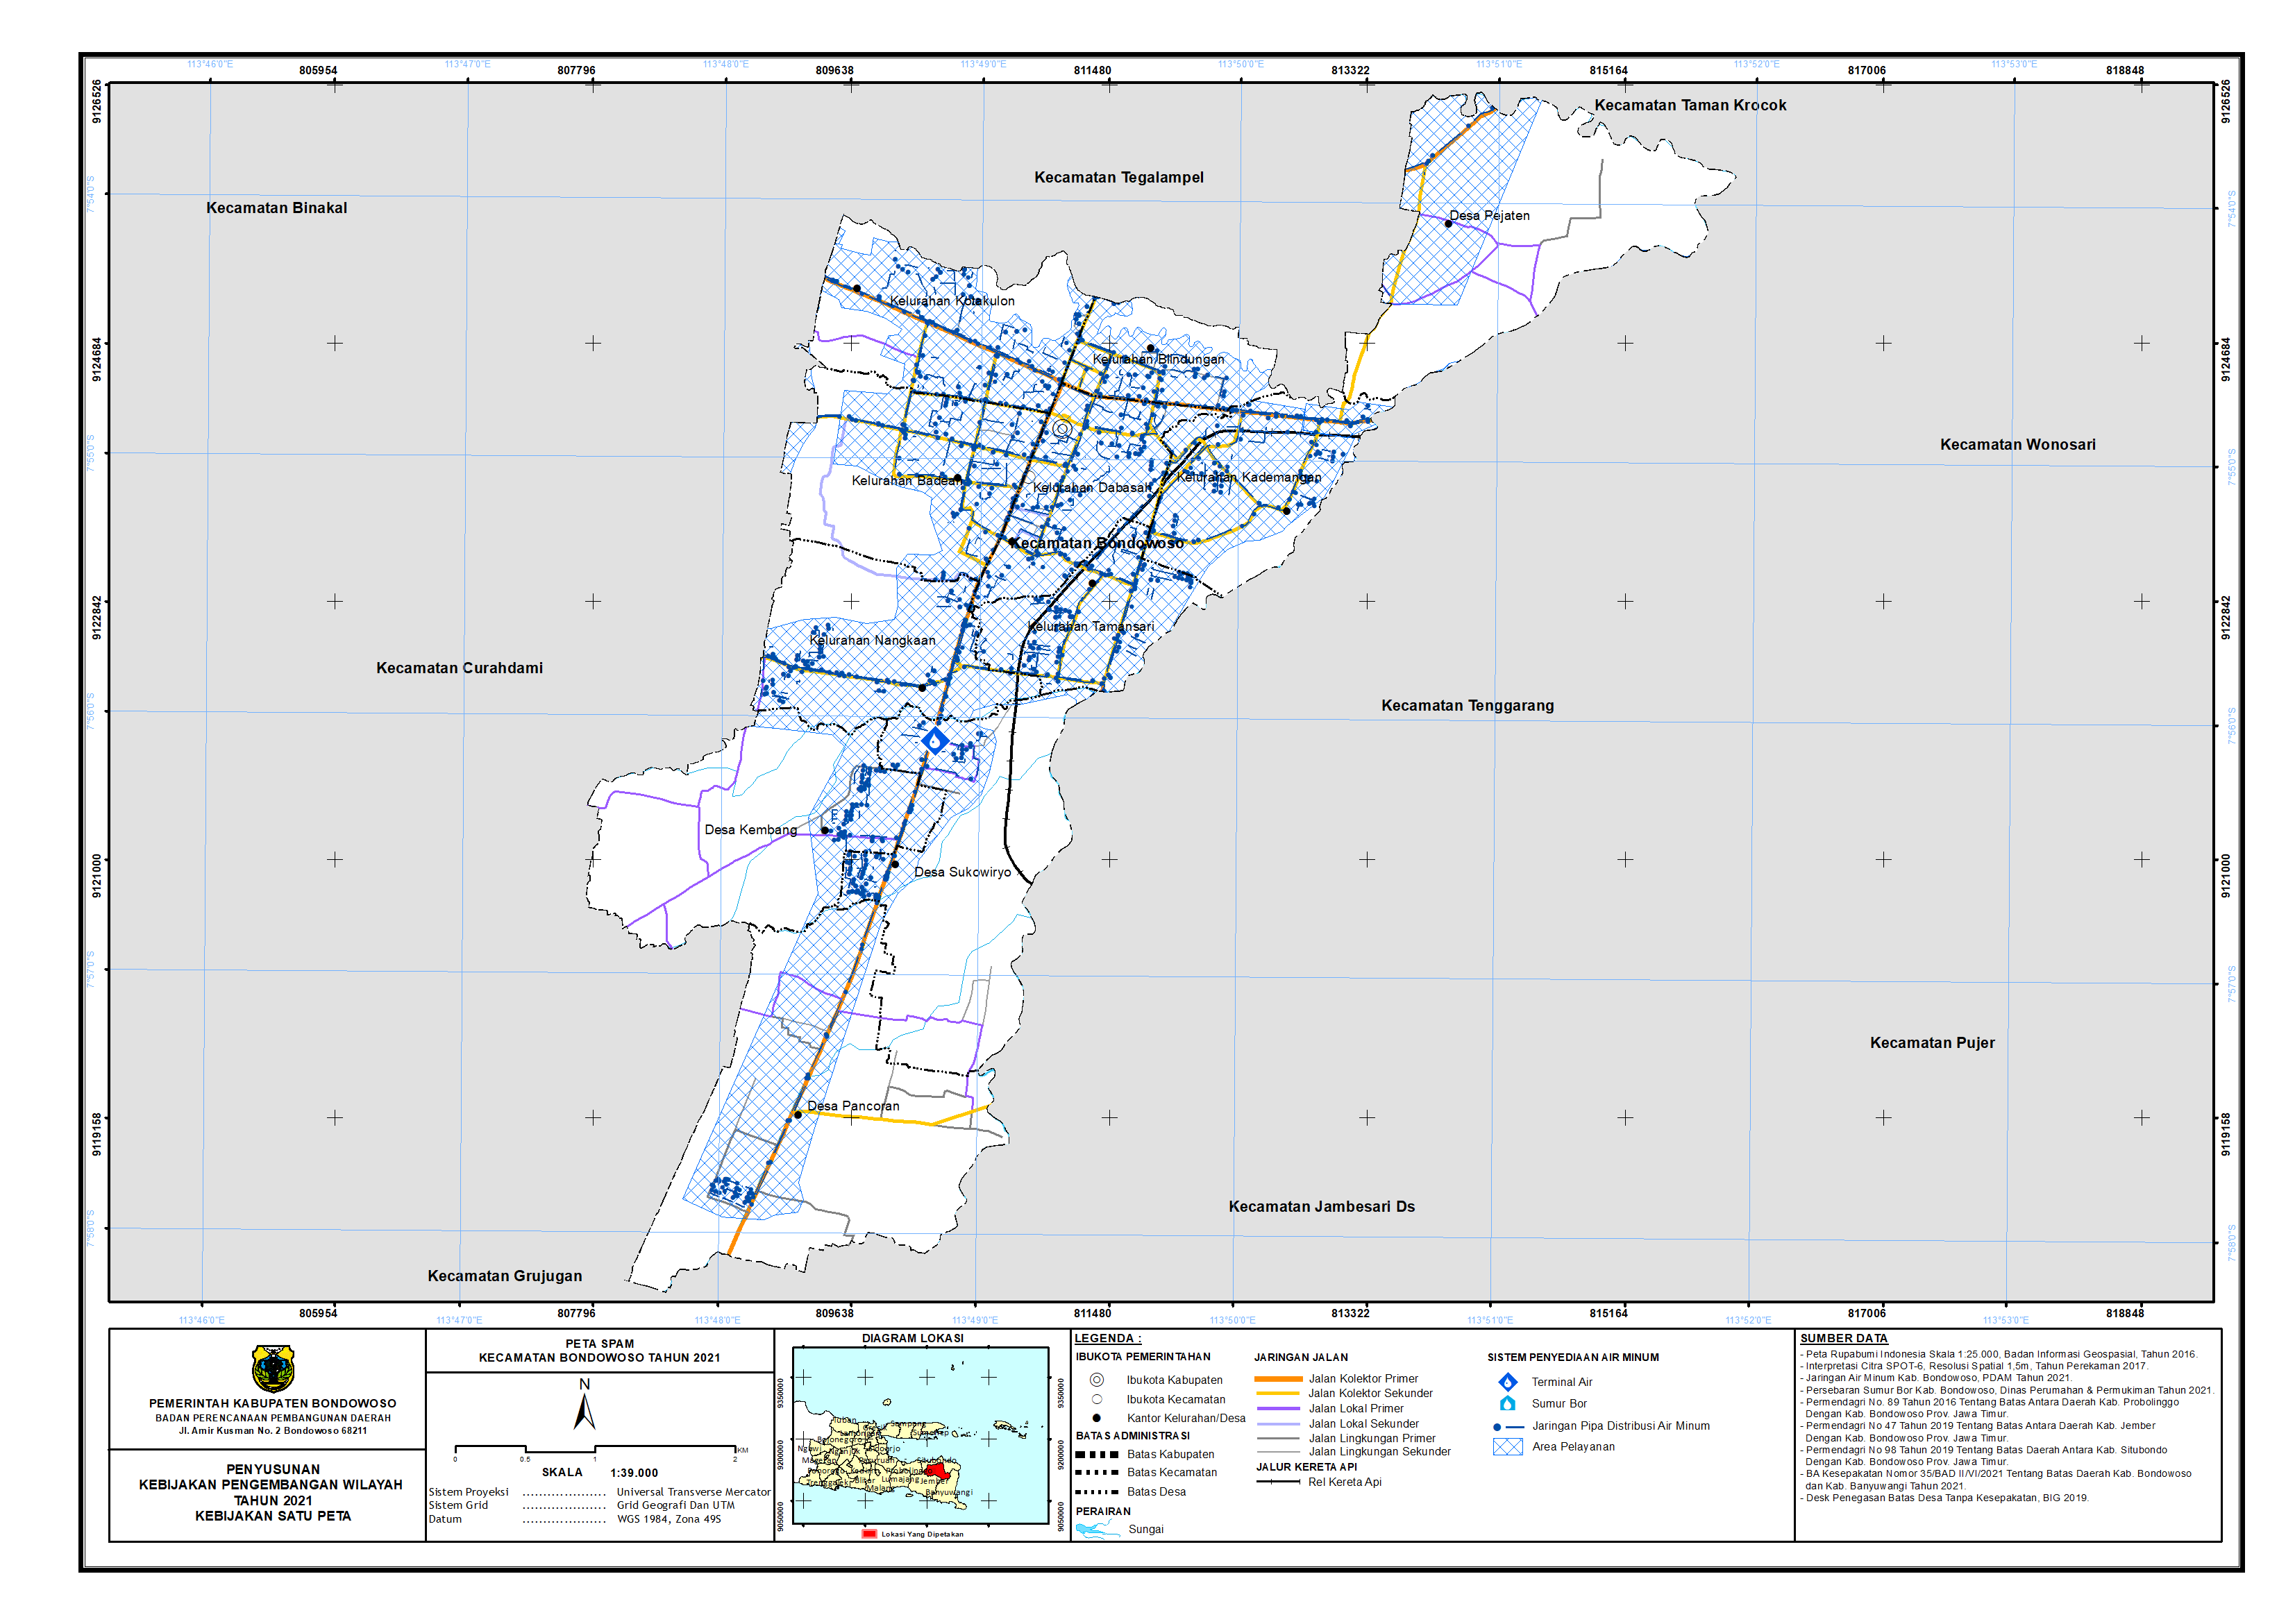 Peta Persebaran SPAM Kecamatan Bondowoso.png